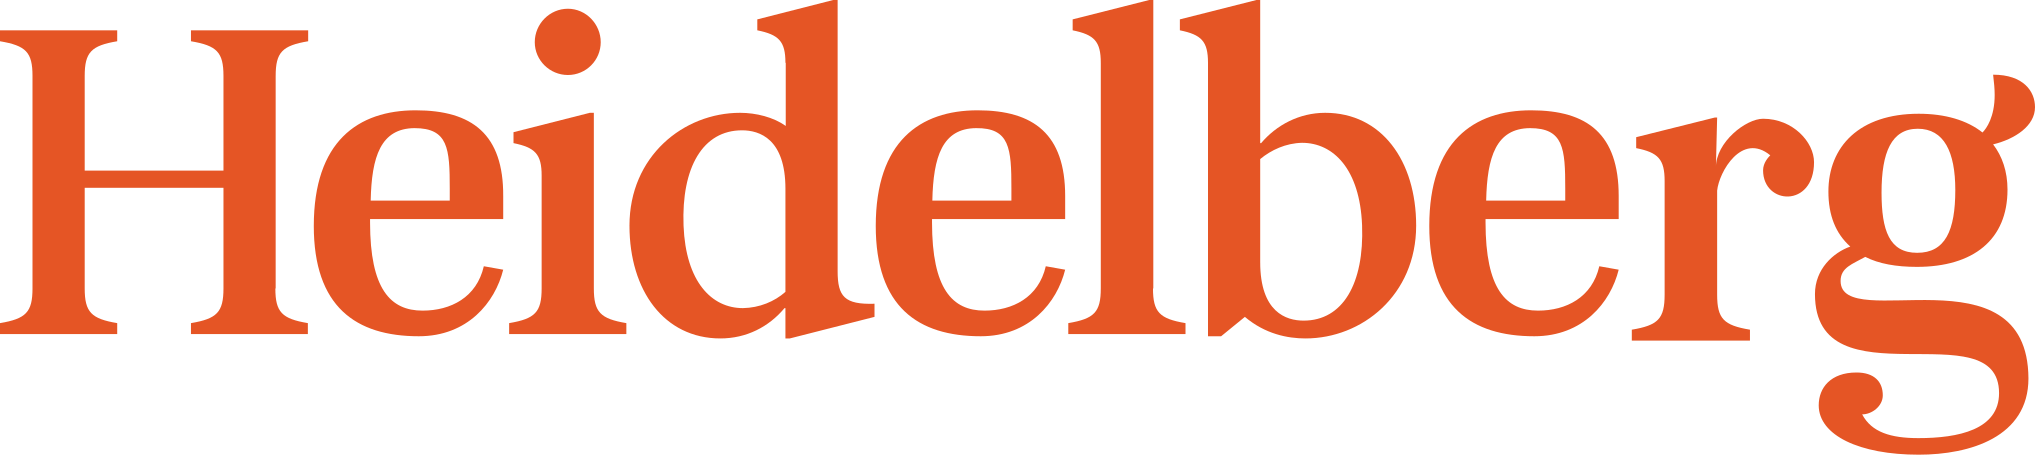 Heidelberg University Logo